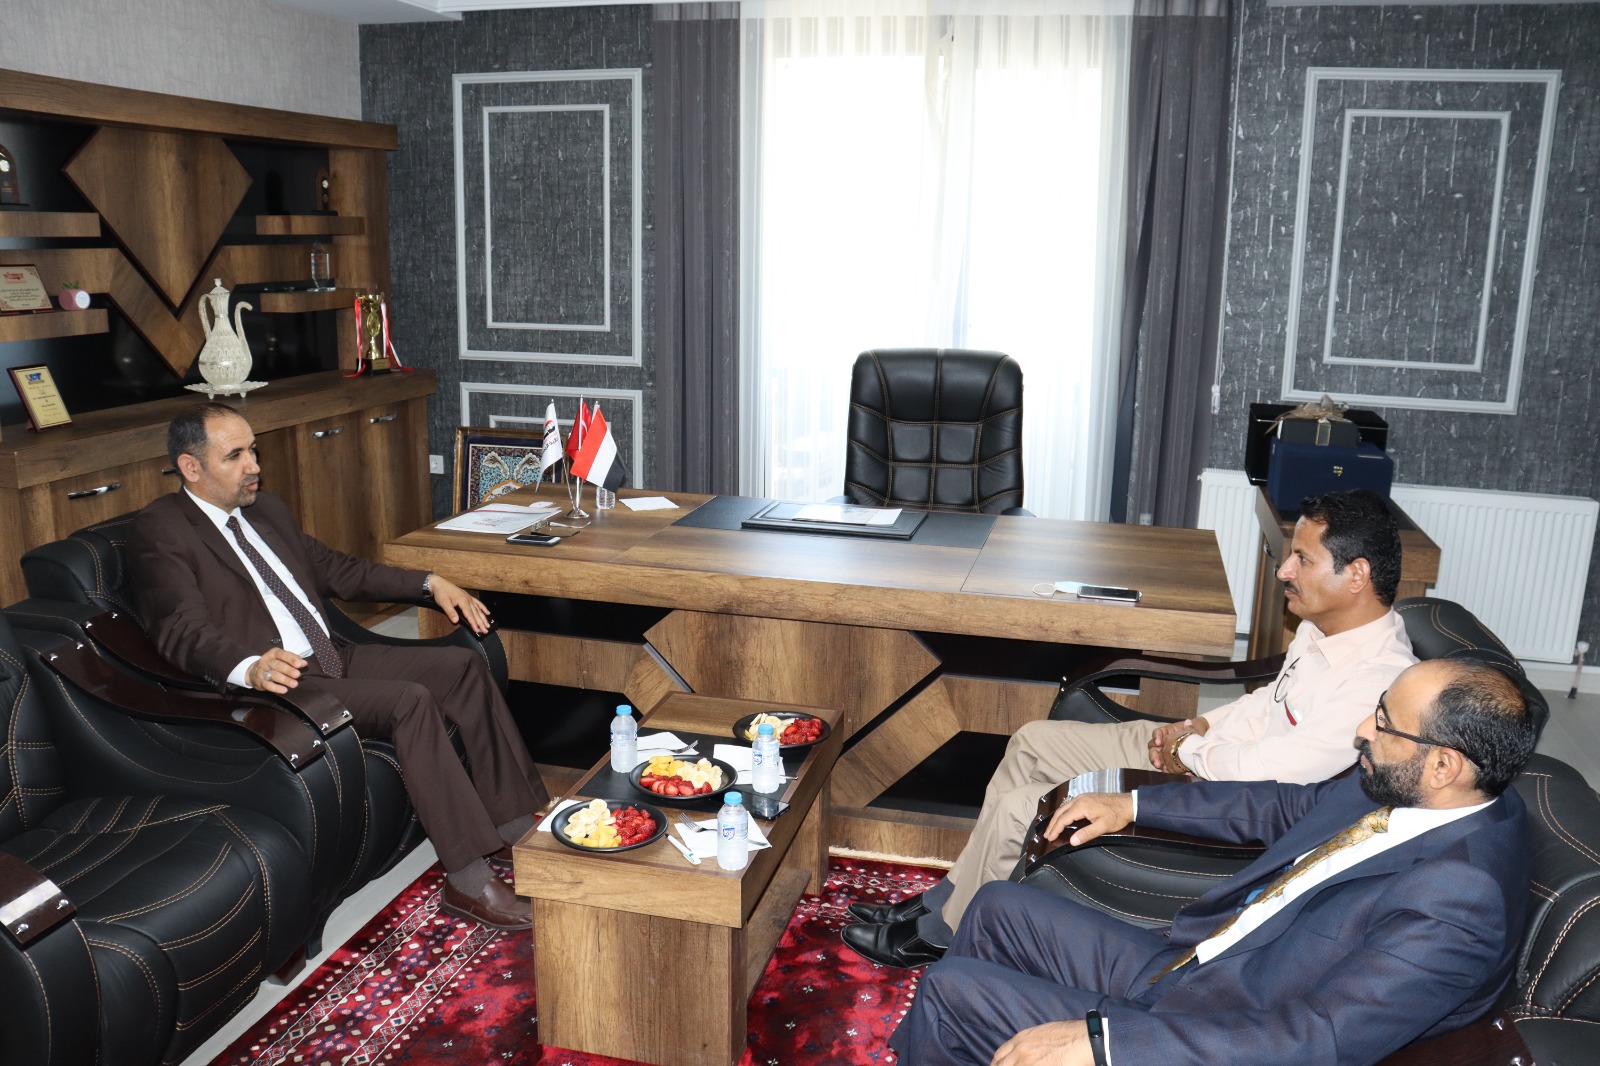 نائب وزير التربية د. العباب يلتقي نائب رئيس الجالية اليمنية بتركيا